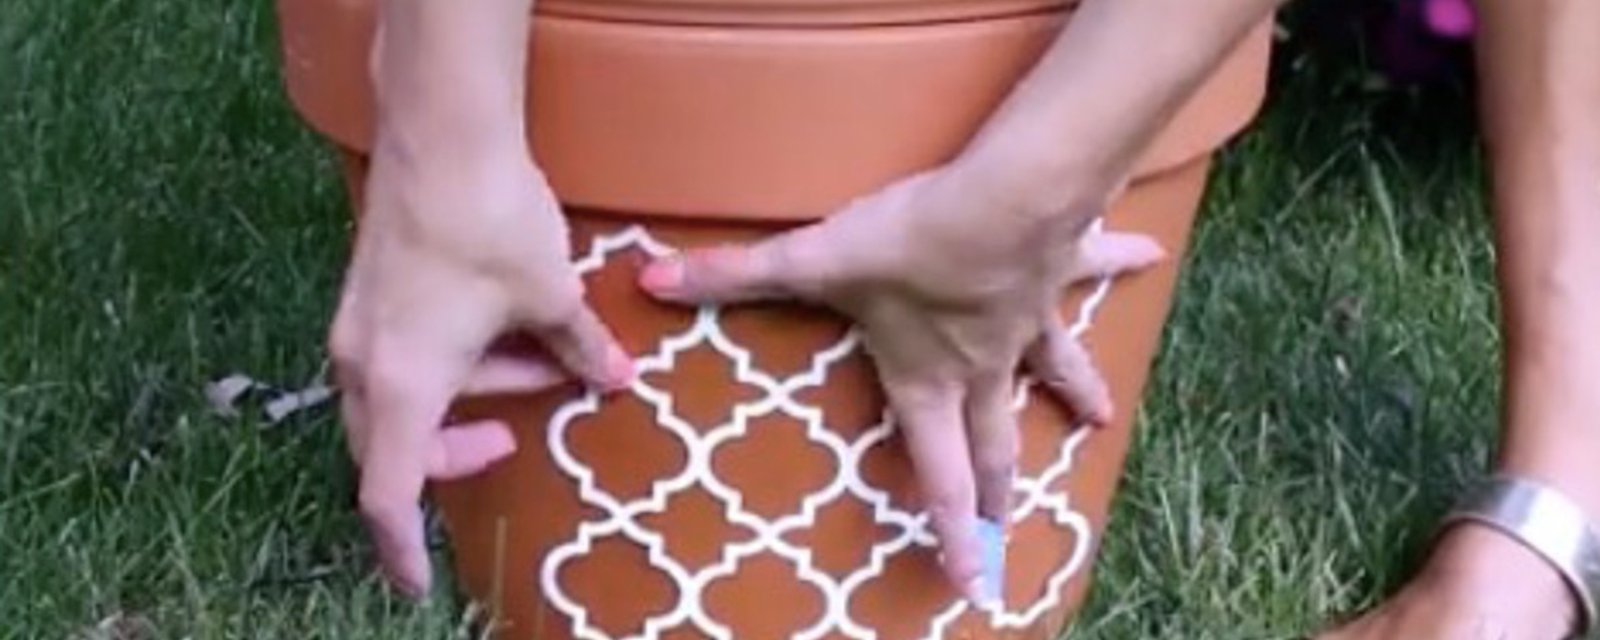 Elle colle un pochoir sur un pot en terre cuite et applique une couche de peinture blanche! Son idée m'a tellement inspirée! 